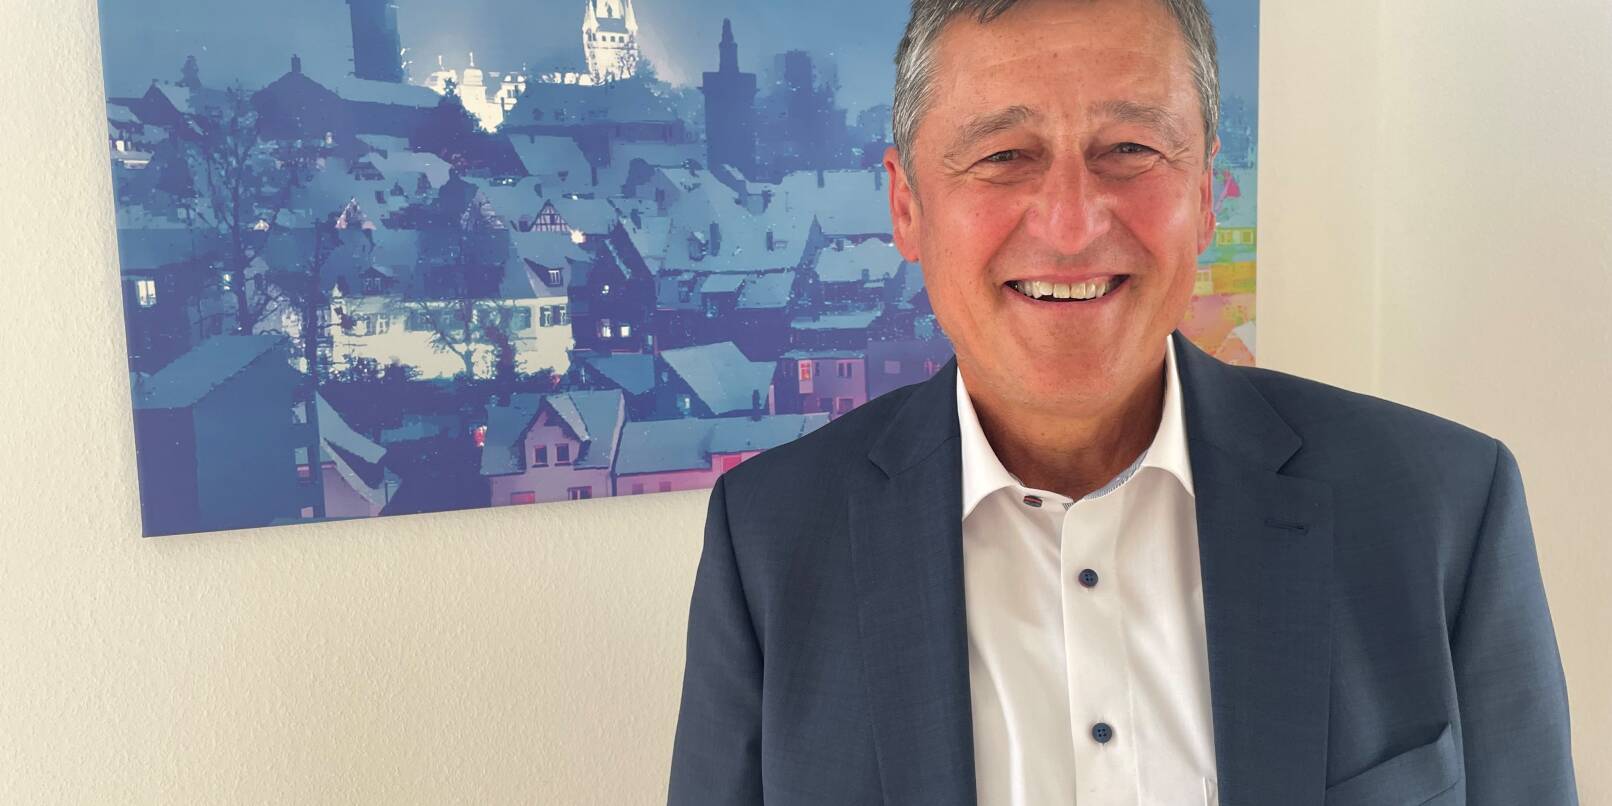 Axel Langel ist Geschäftsführer der Baugenossenschaft Weinheim.